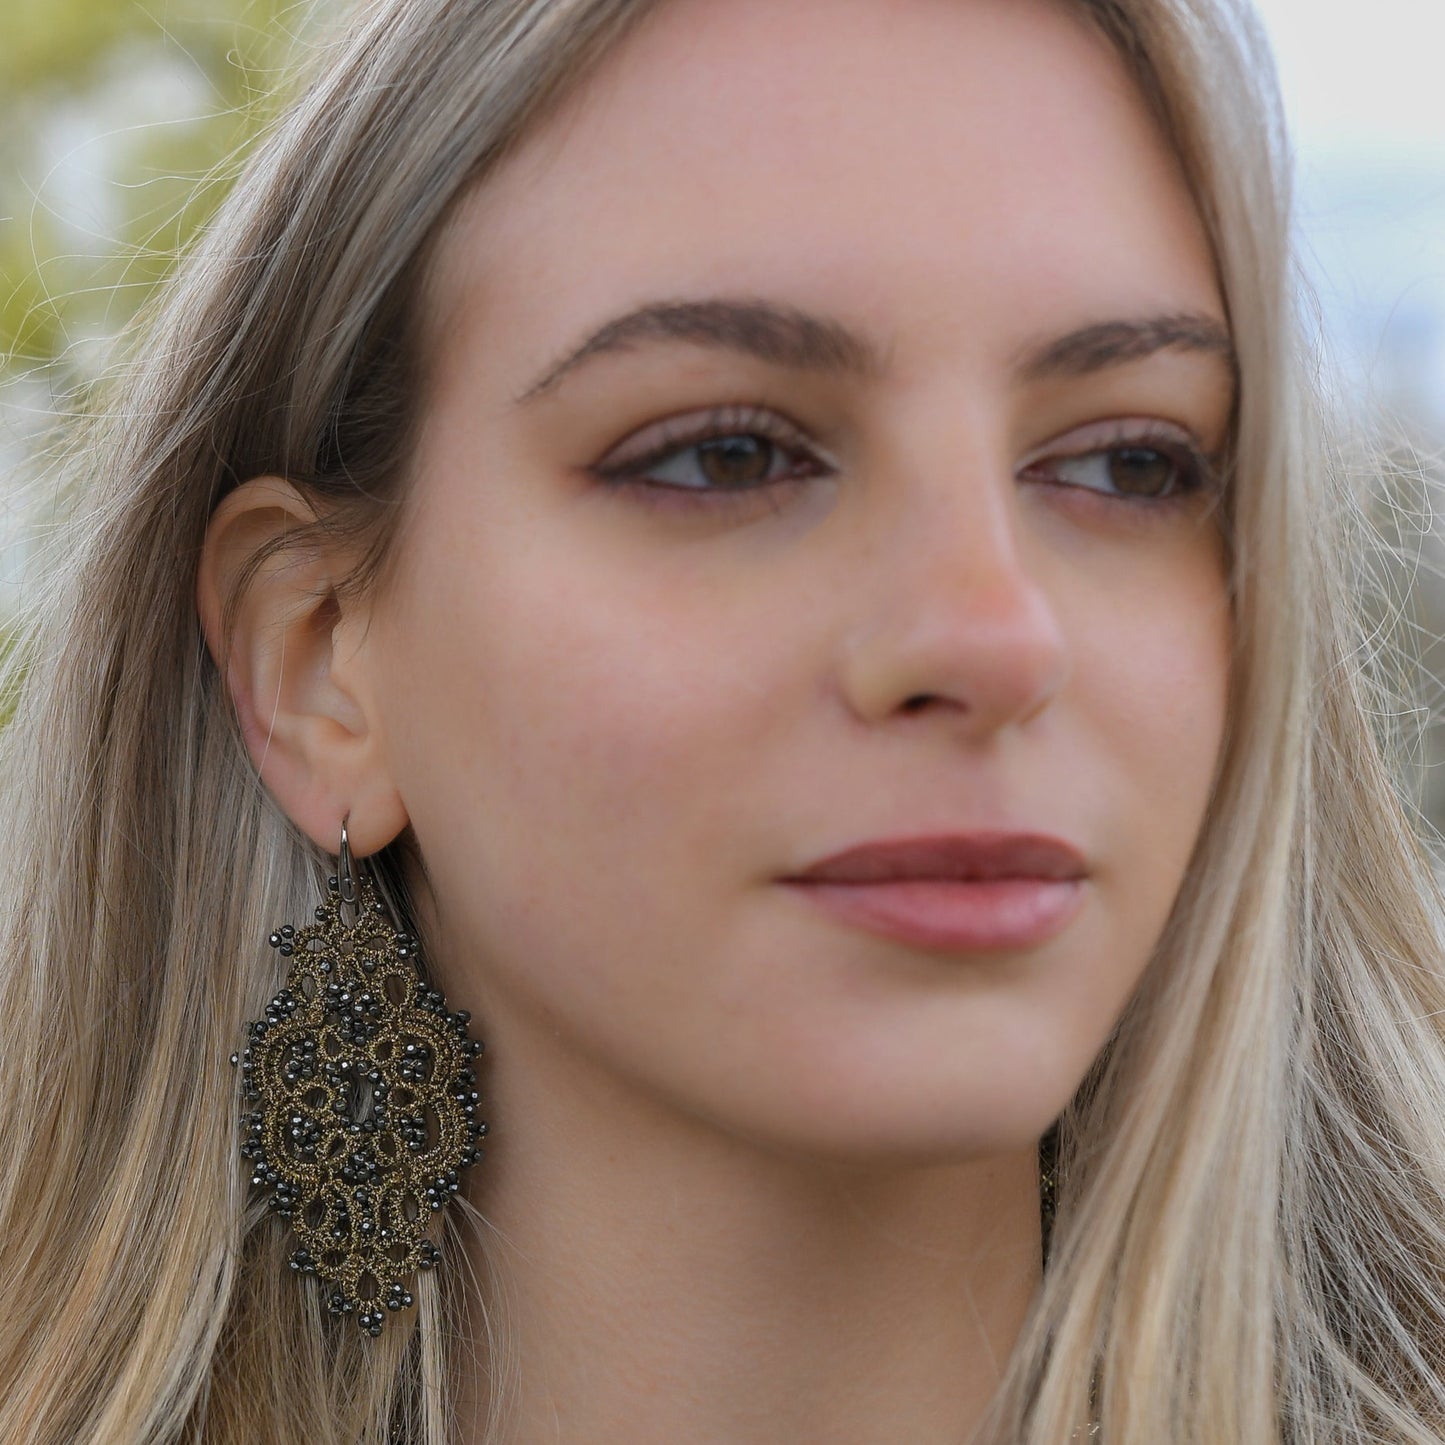 Alexandra lace earrings, peach green